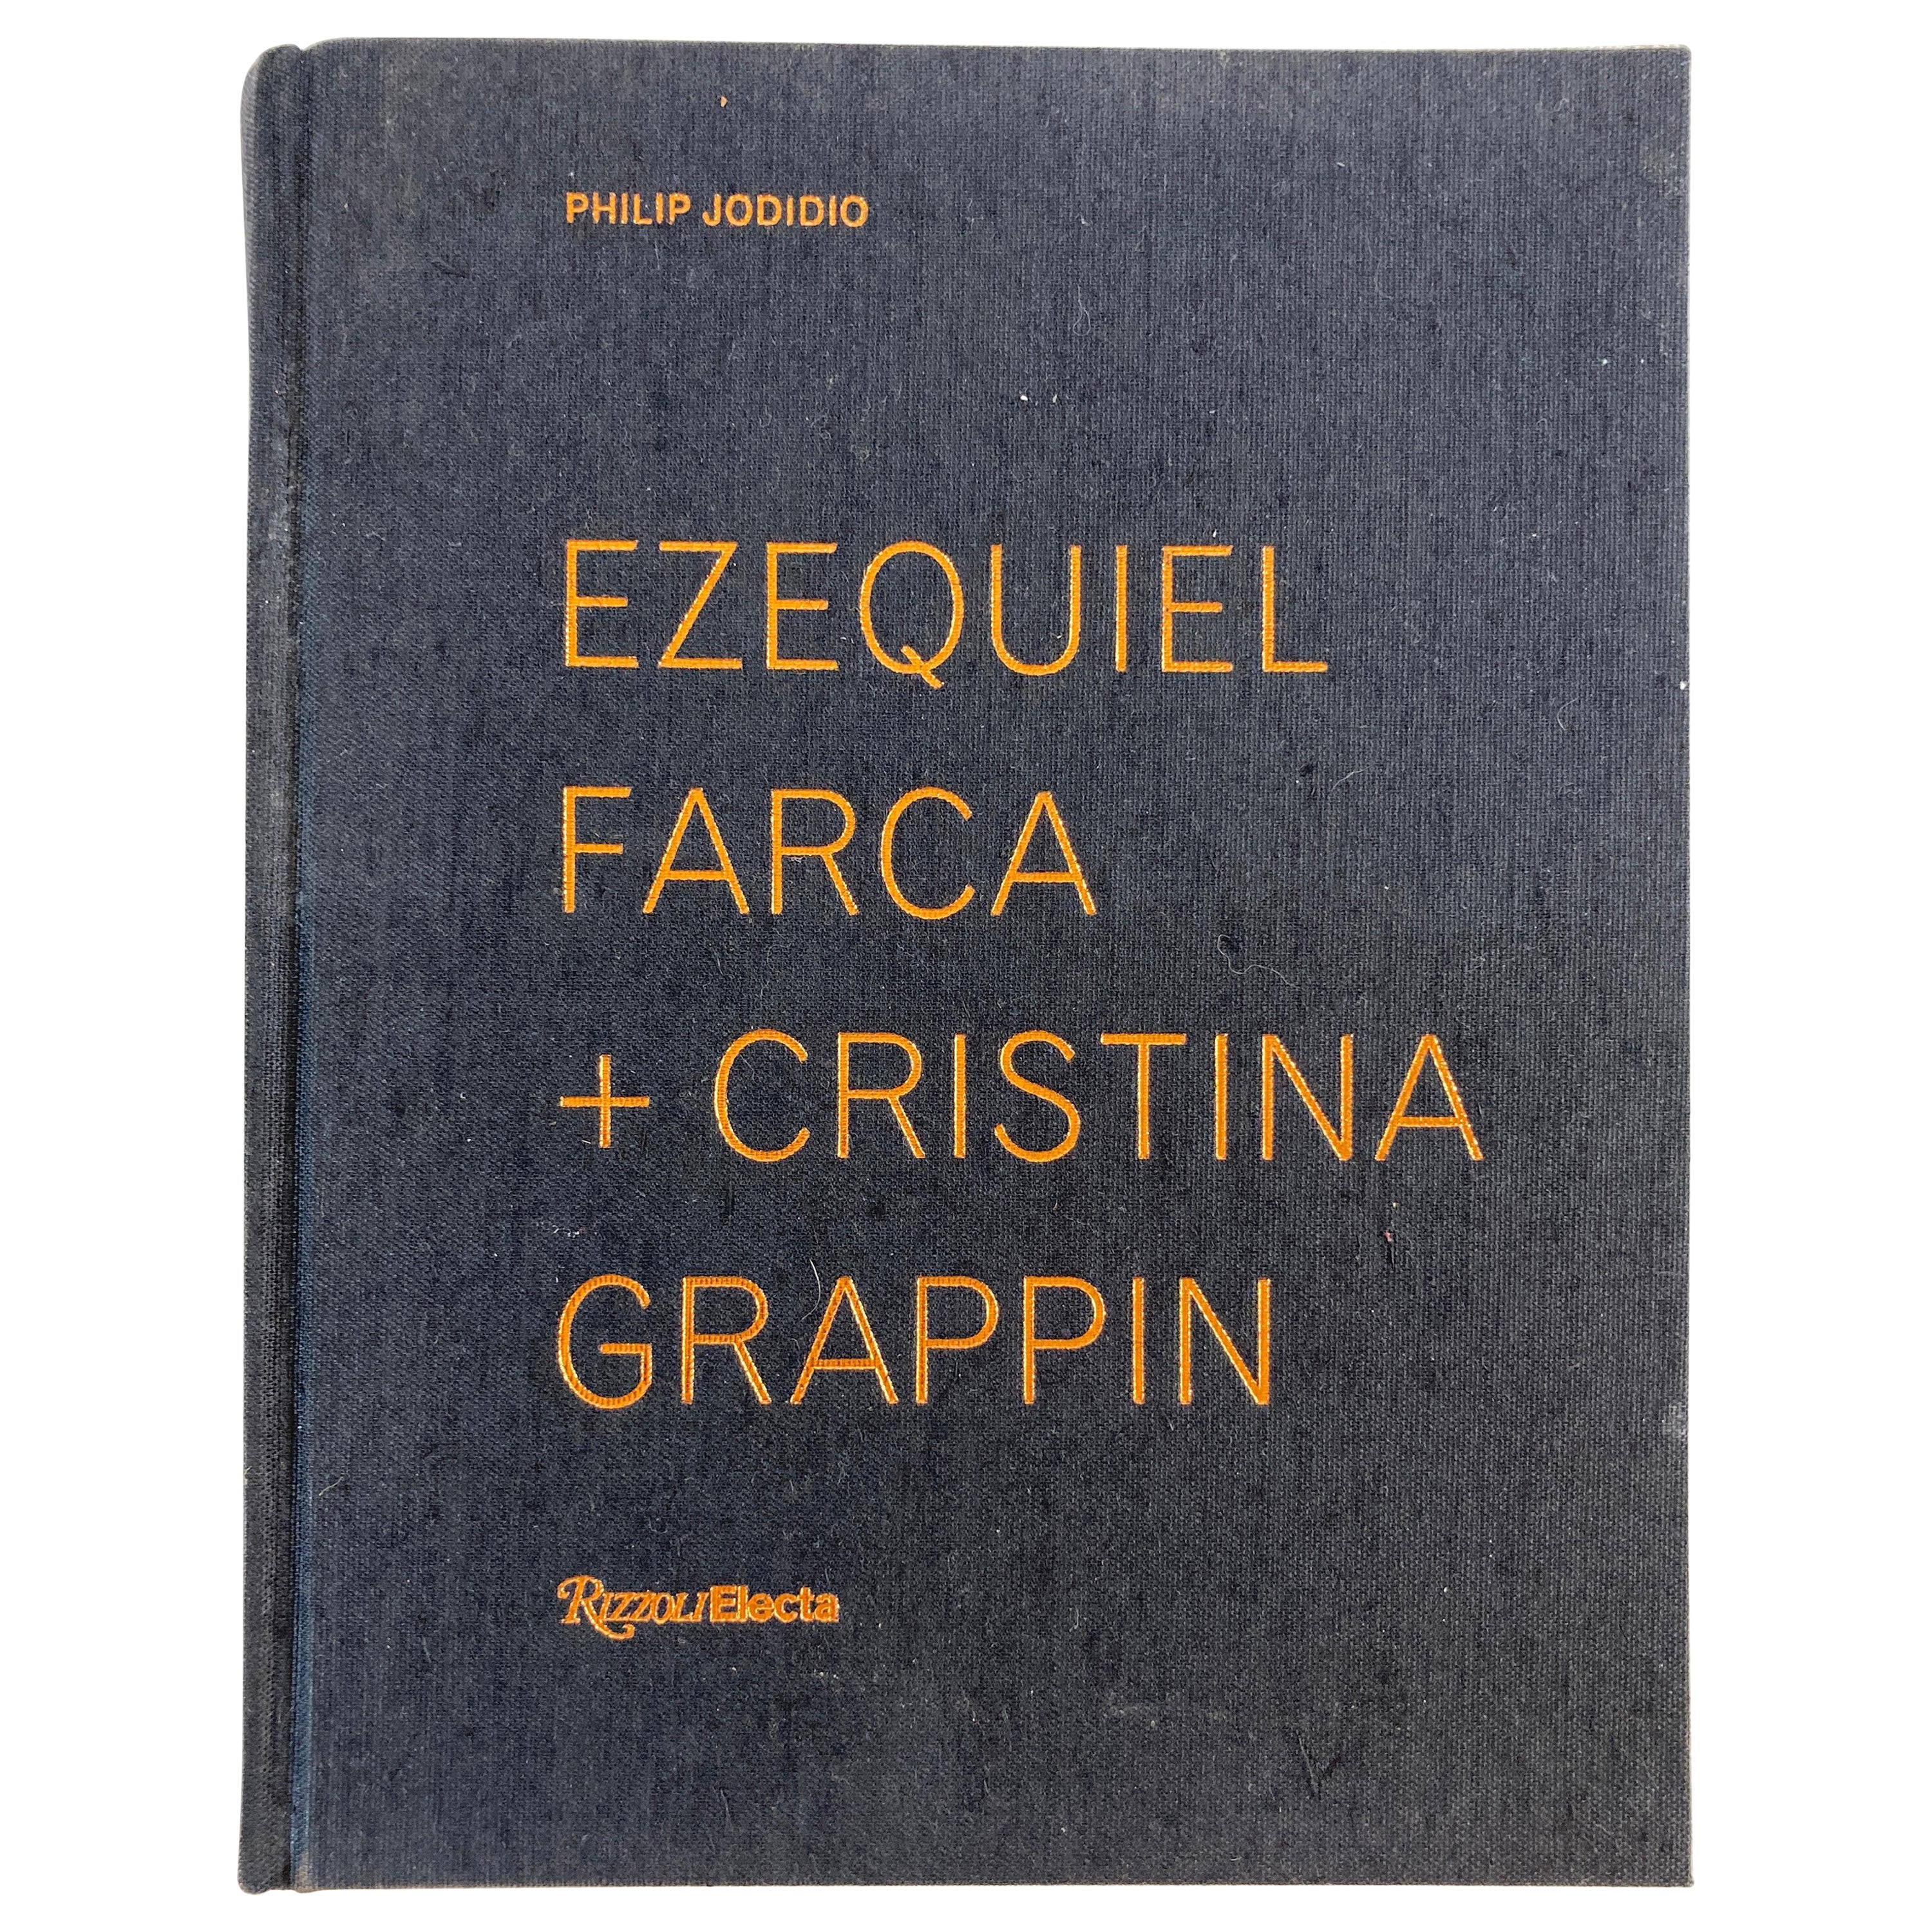 Ezequiel Farca + Cristina Grappin Architecture Interior Design, Monographenbuch